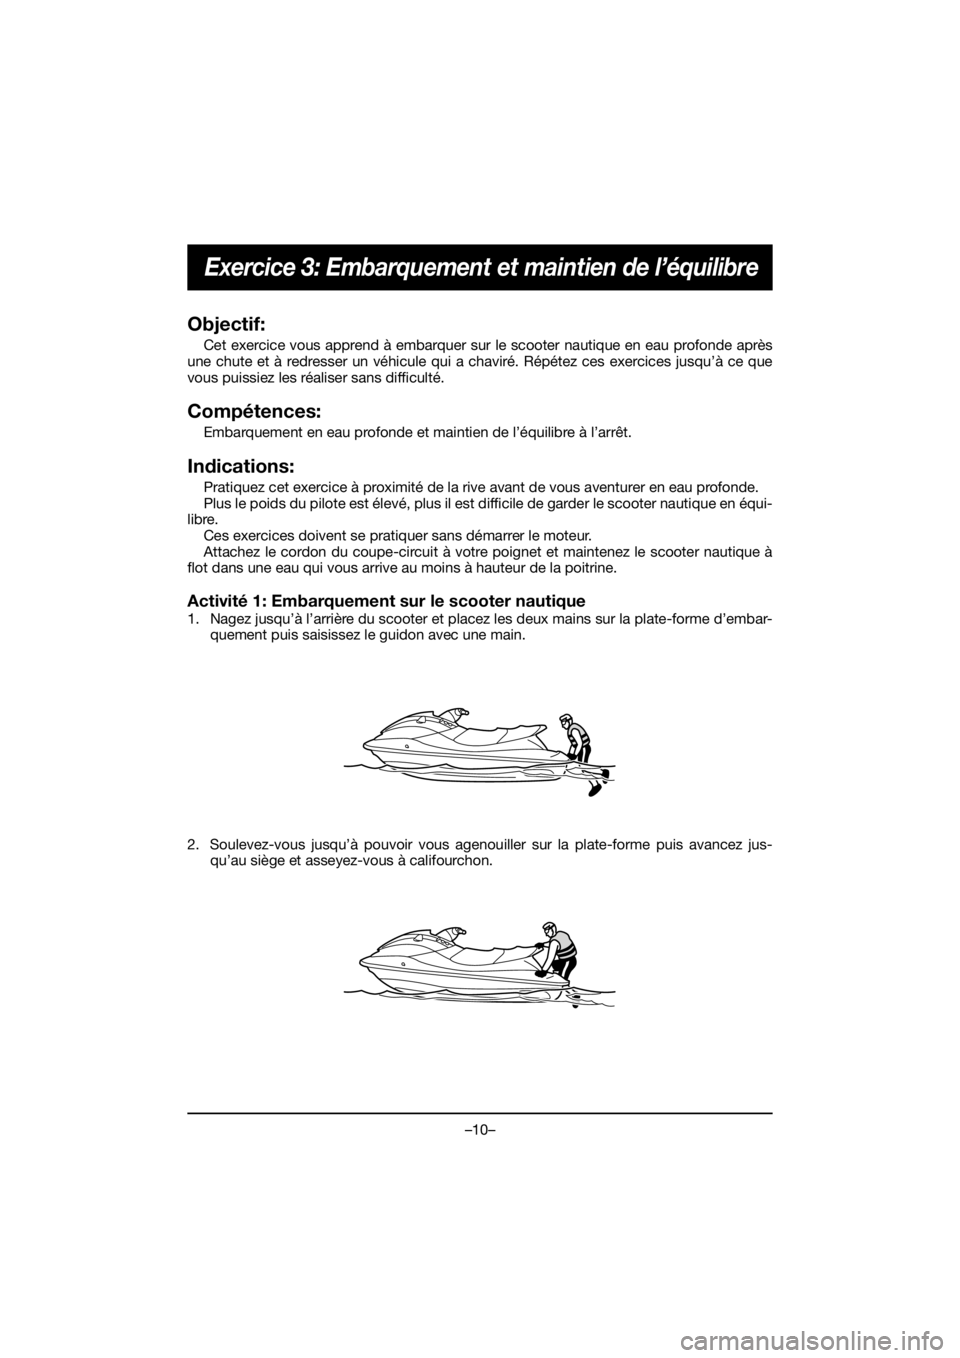 YAMAHA EXR 2020  Notices Demploi (in French) –10–
Exercice 3: Embarquement et maintien de l’équilibre
Objectif:
Cet exercice vous apprend à embarquer sur le scooter nautique en eau profonde après
une chute et à redresser un véhicule q